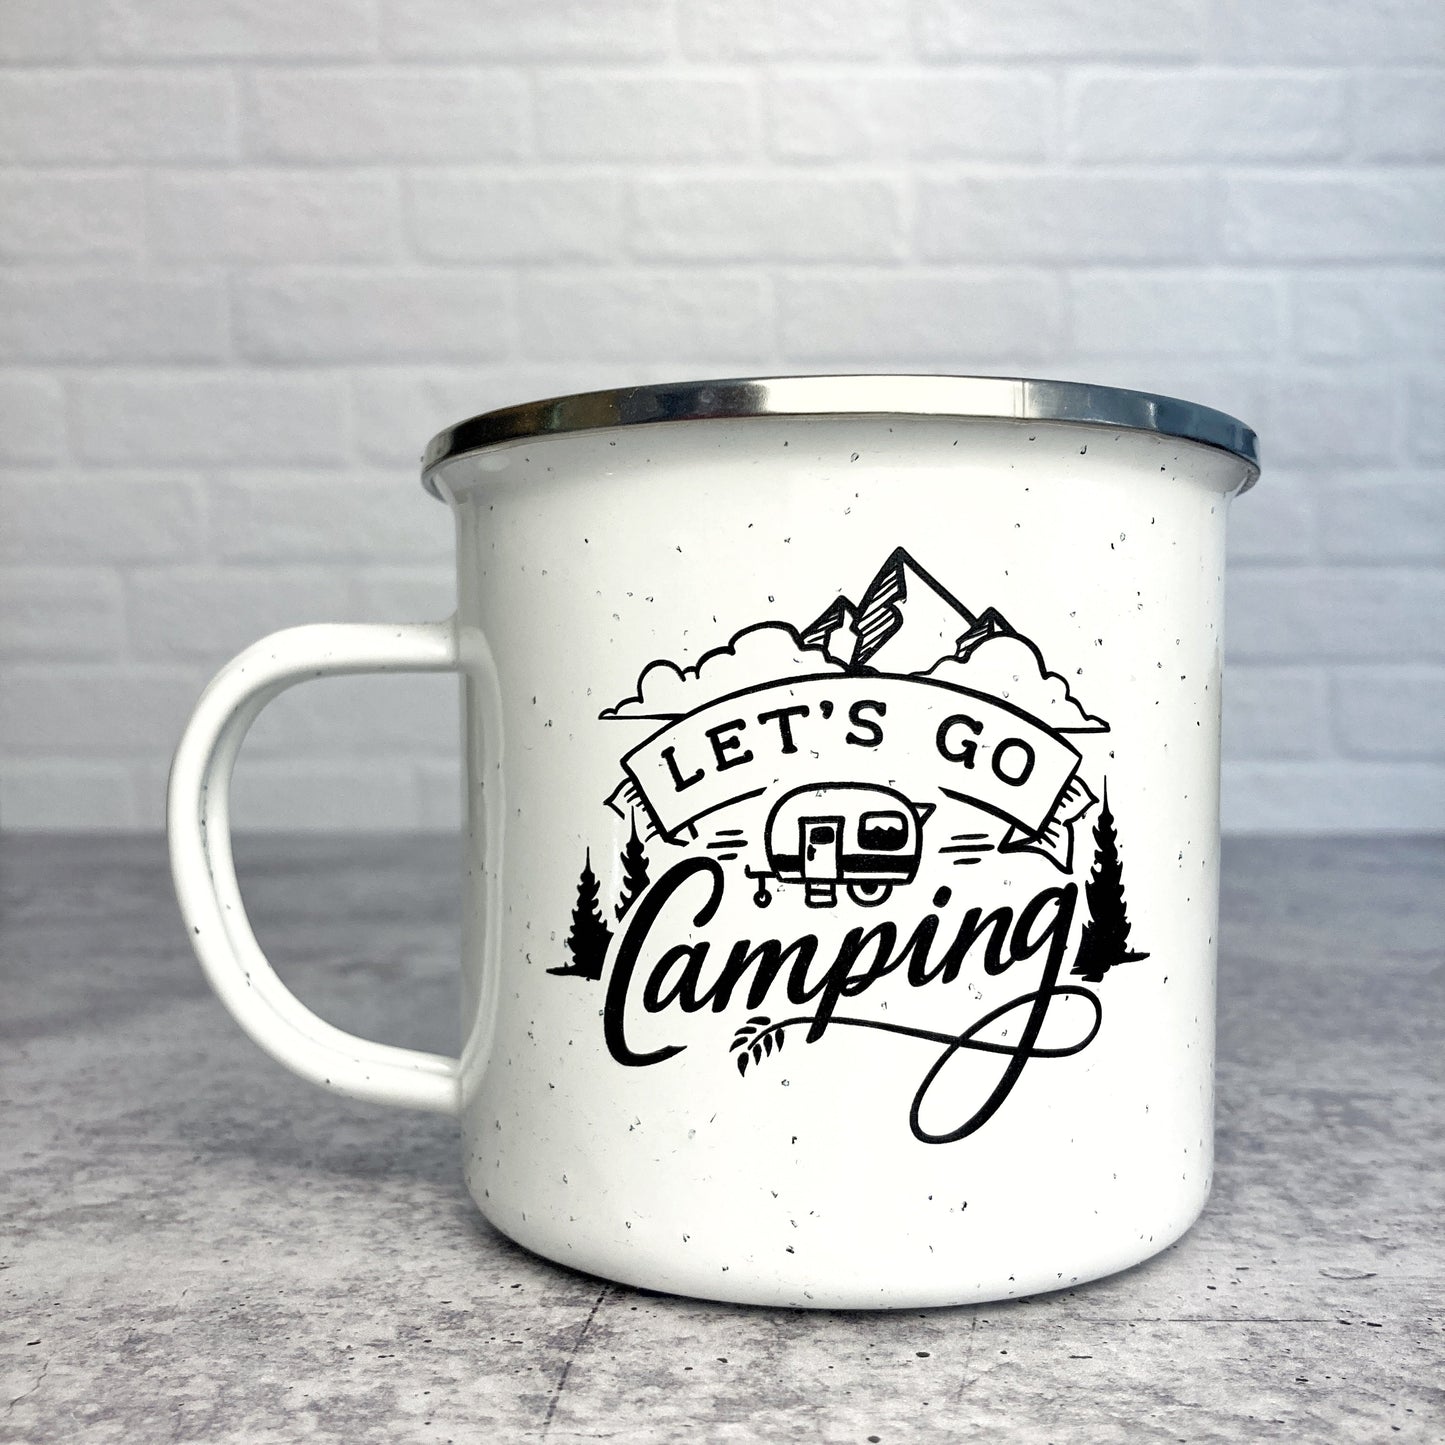 Let's Go Camping with Camper Design on Enamel mug